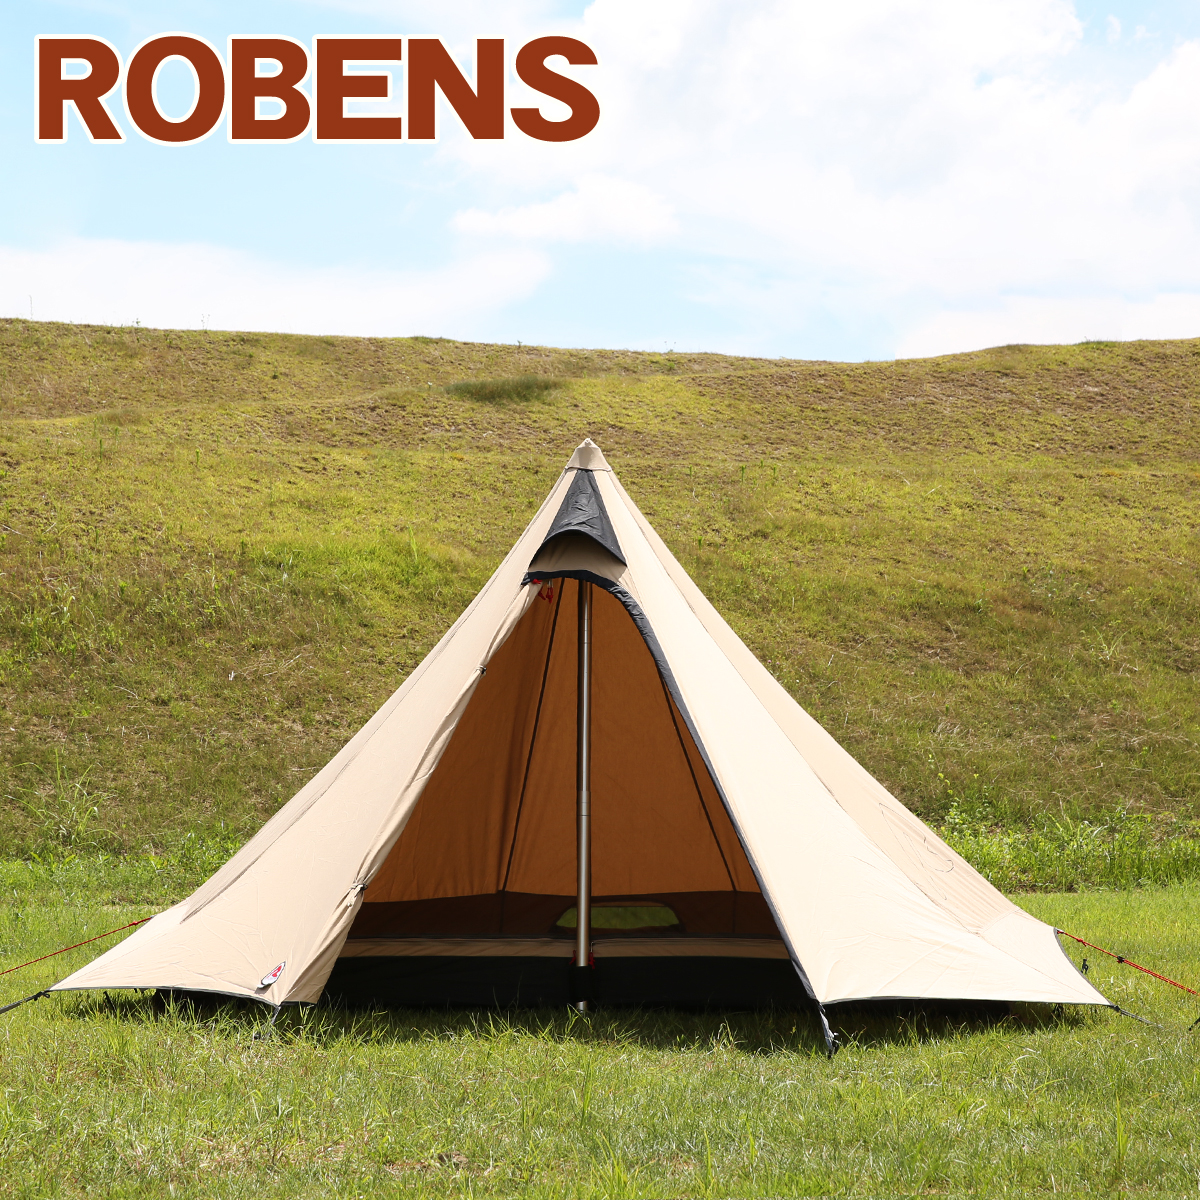 ローベンス Fairbanks（フェアバンクス）４人用テント 130143 ティピー アウトバック レンジシリーズ Robens